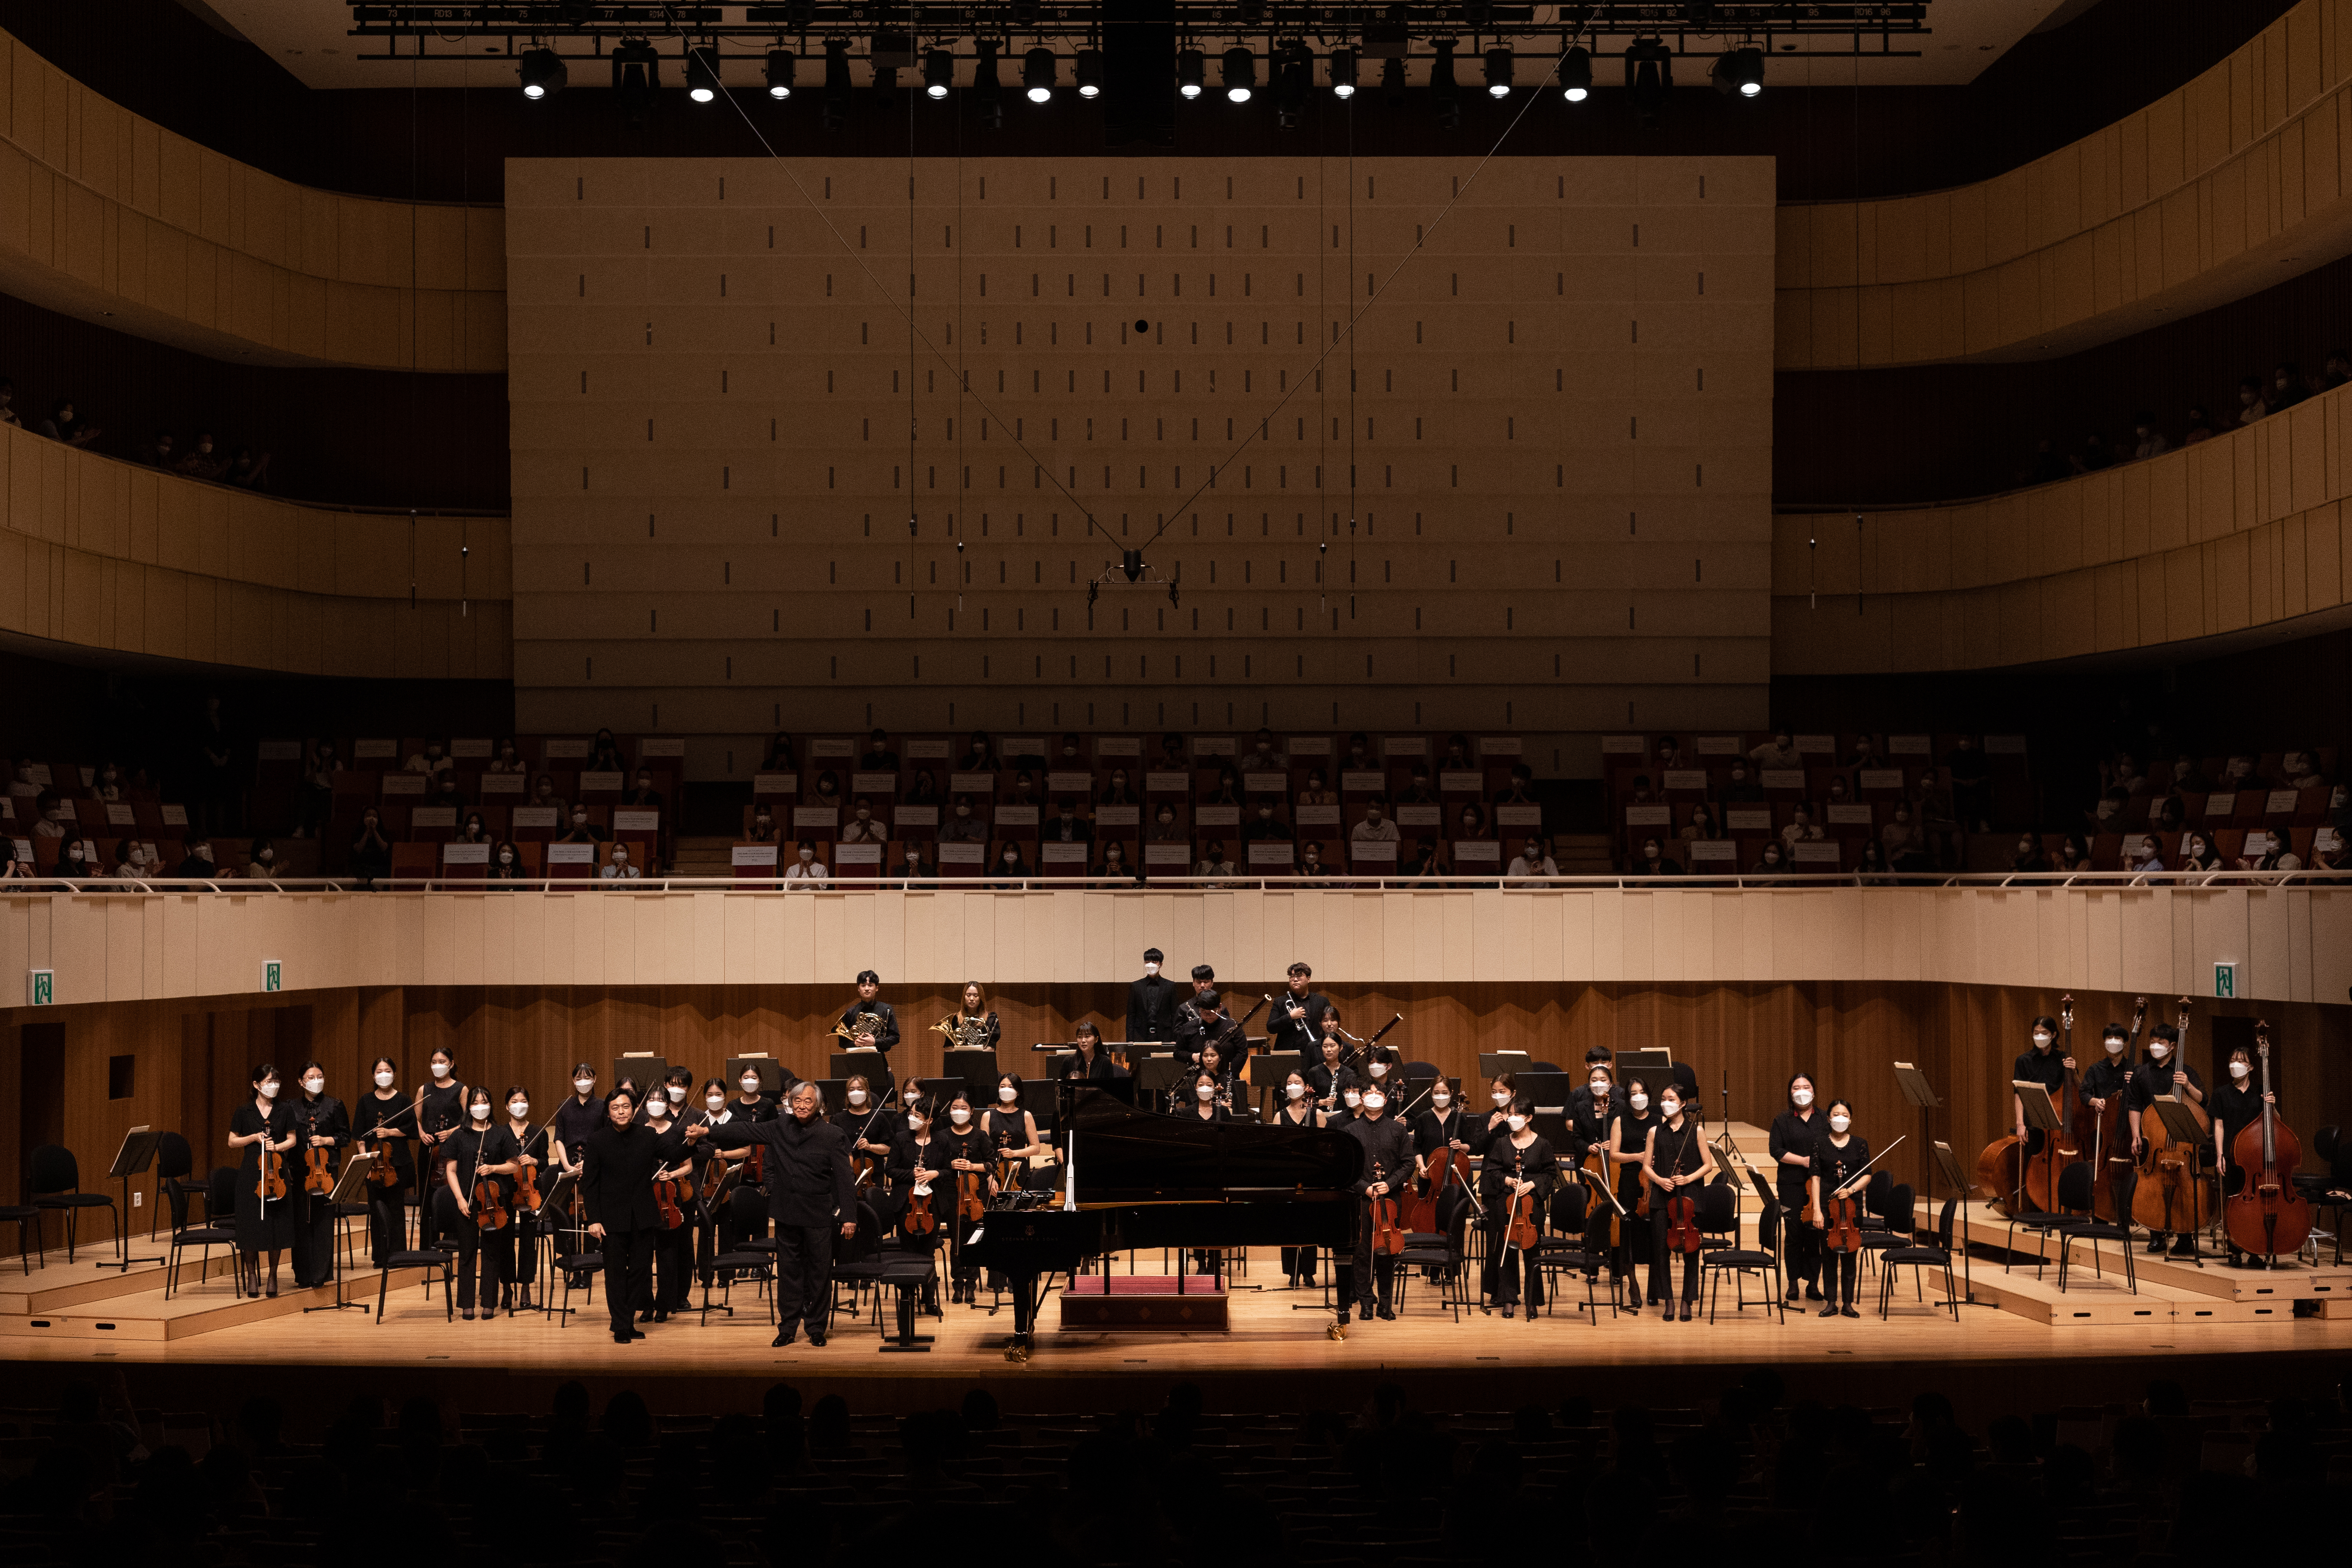 지난 12일 대구콘서트하우스에서 열린 솔라시안 유스오케스트라 공연에서 지휘를 맡은 김선욱(왼쪽)과 모차르트 피아노 협주곡 20번을 연주한 피아니스트 백건우가 객석을 향해 인사하고 있다. 대구콘서트하우스 제공